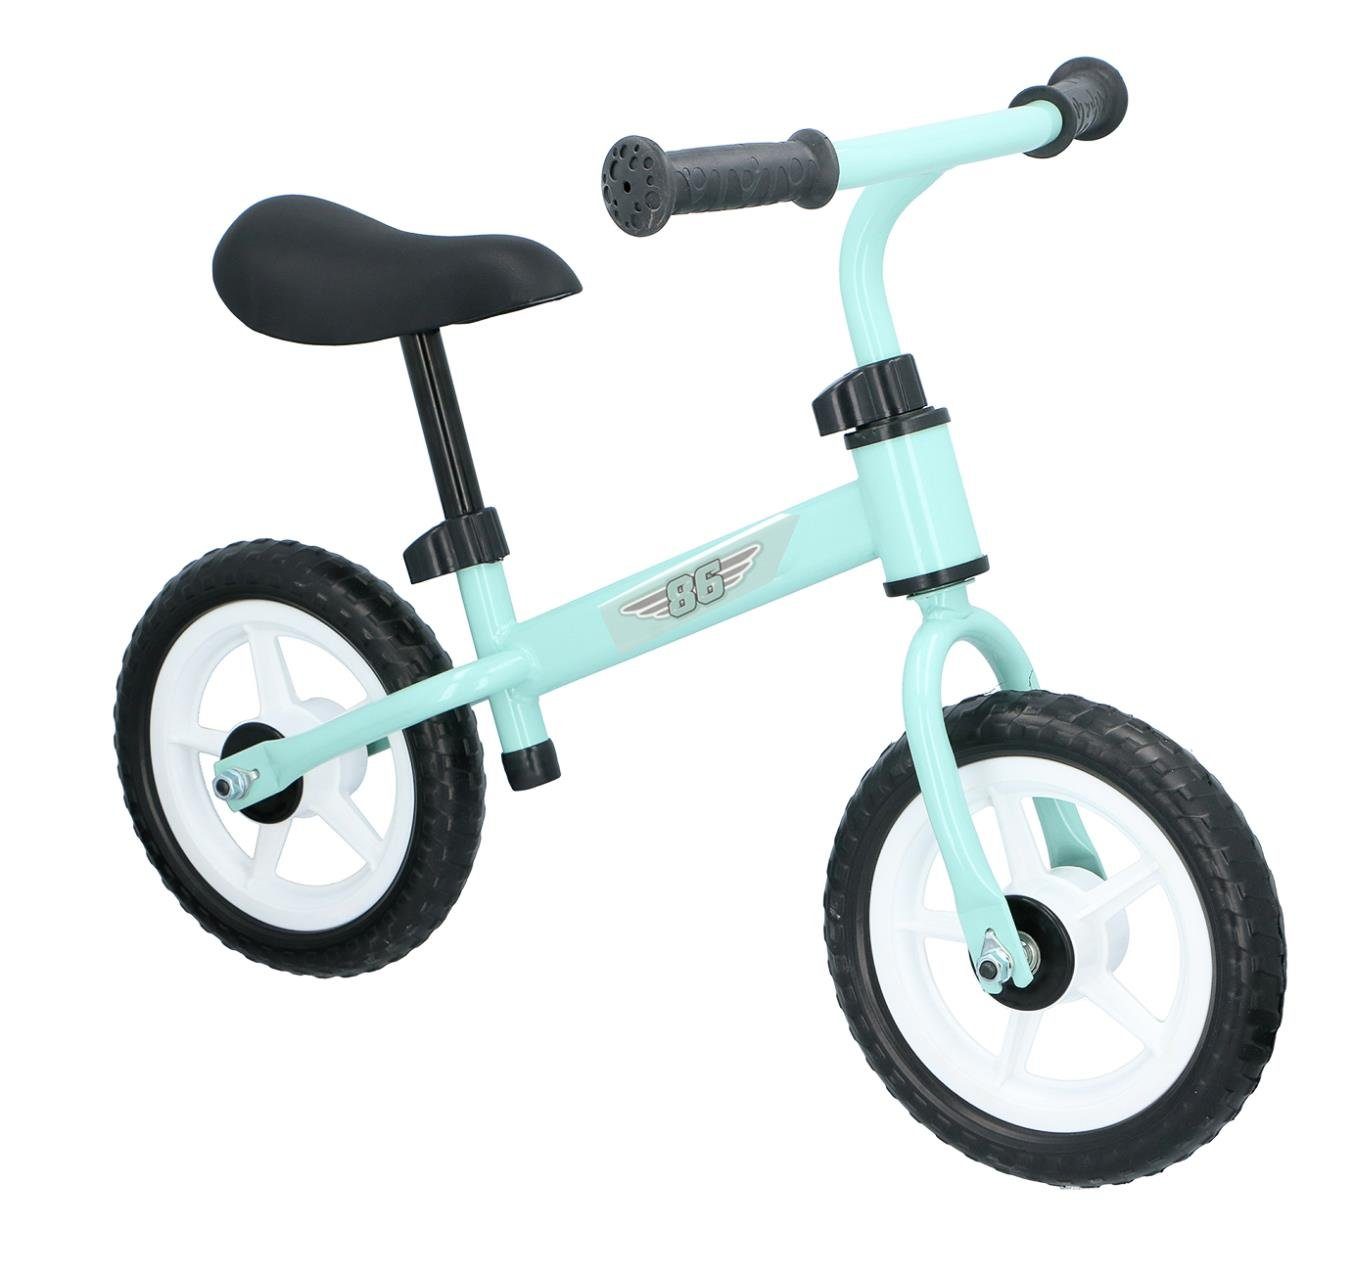 Bubble-Store Laufrad Kinder Laufrad ab 2 Jahre, Leichtmetall Rahmen, Kinder Lernlaufrad, höhenverstellbarer ergonomischer Sattel, Lenker mit rutschfesten Handgriffen Mint-Grün